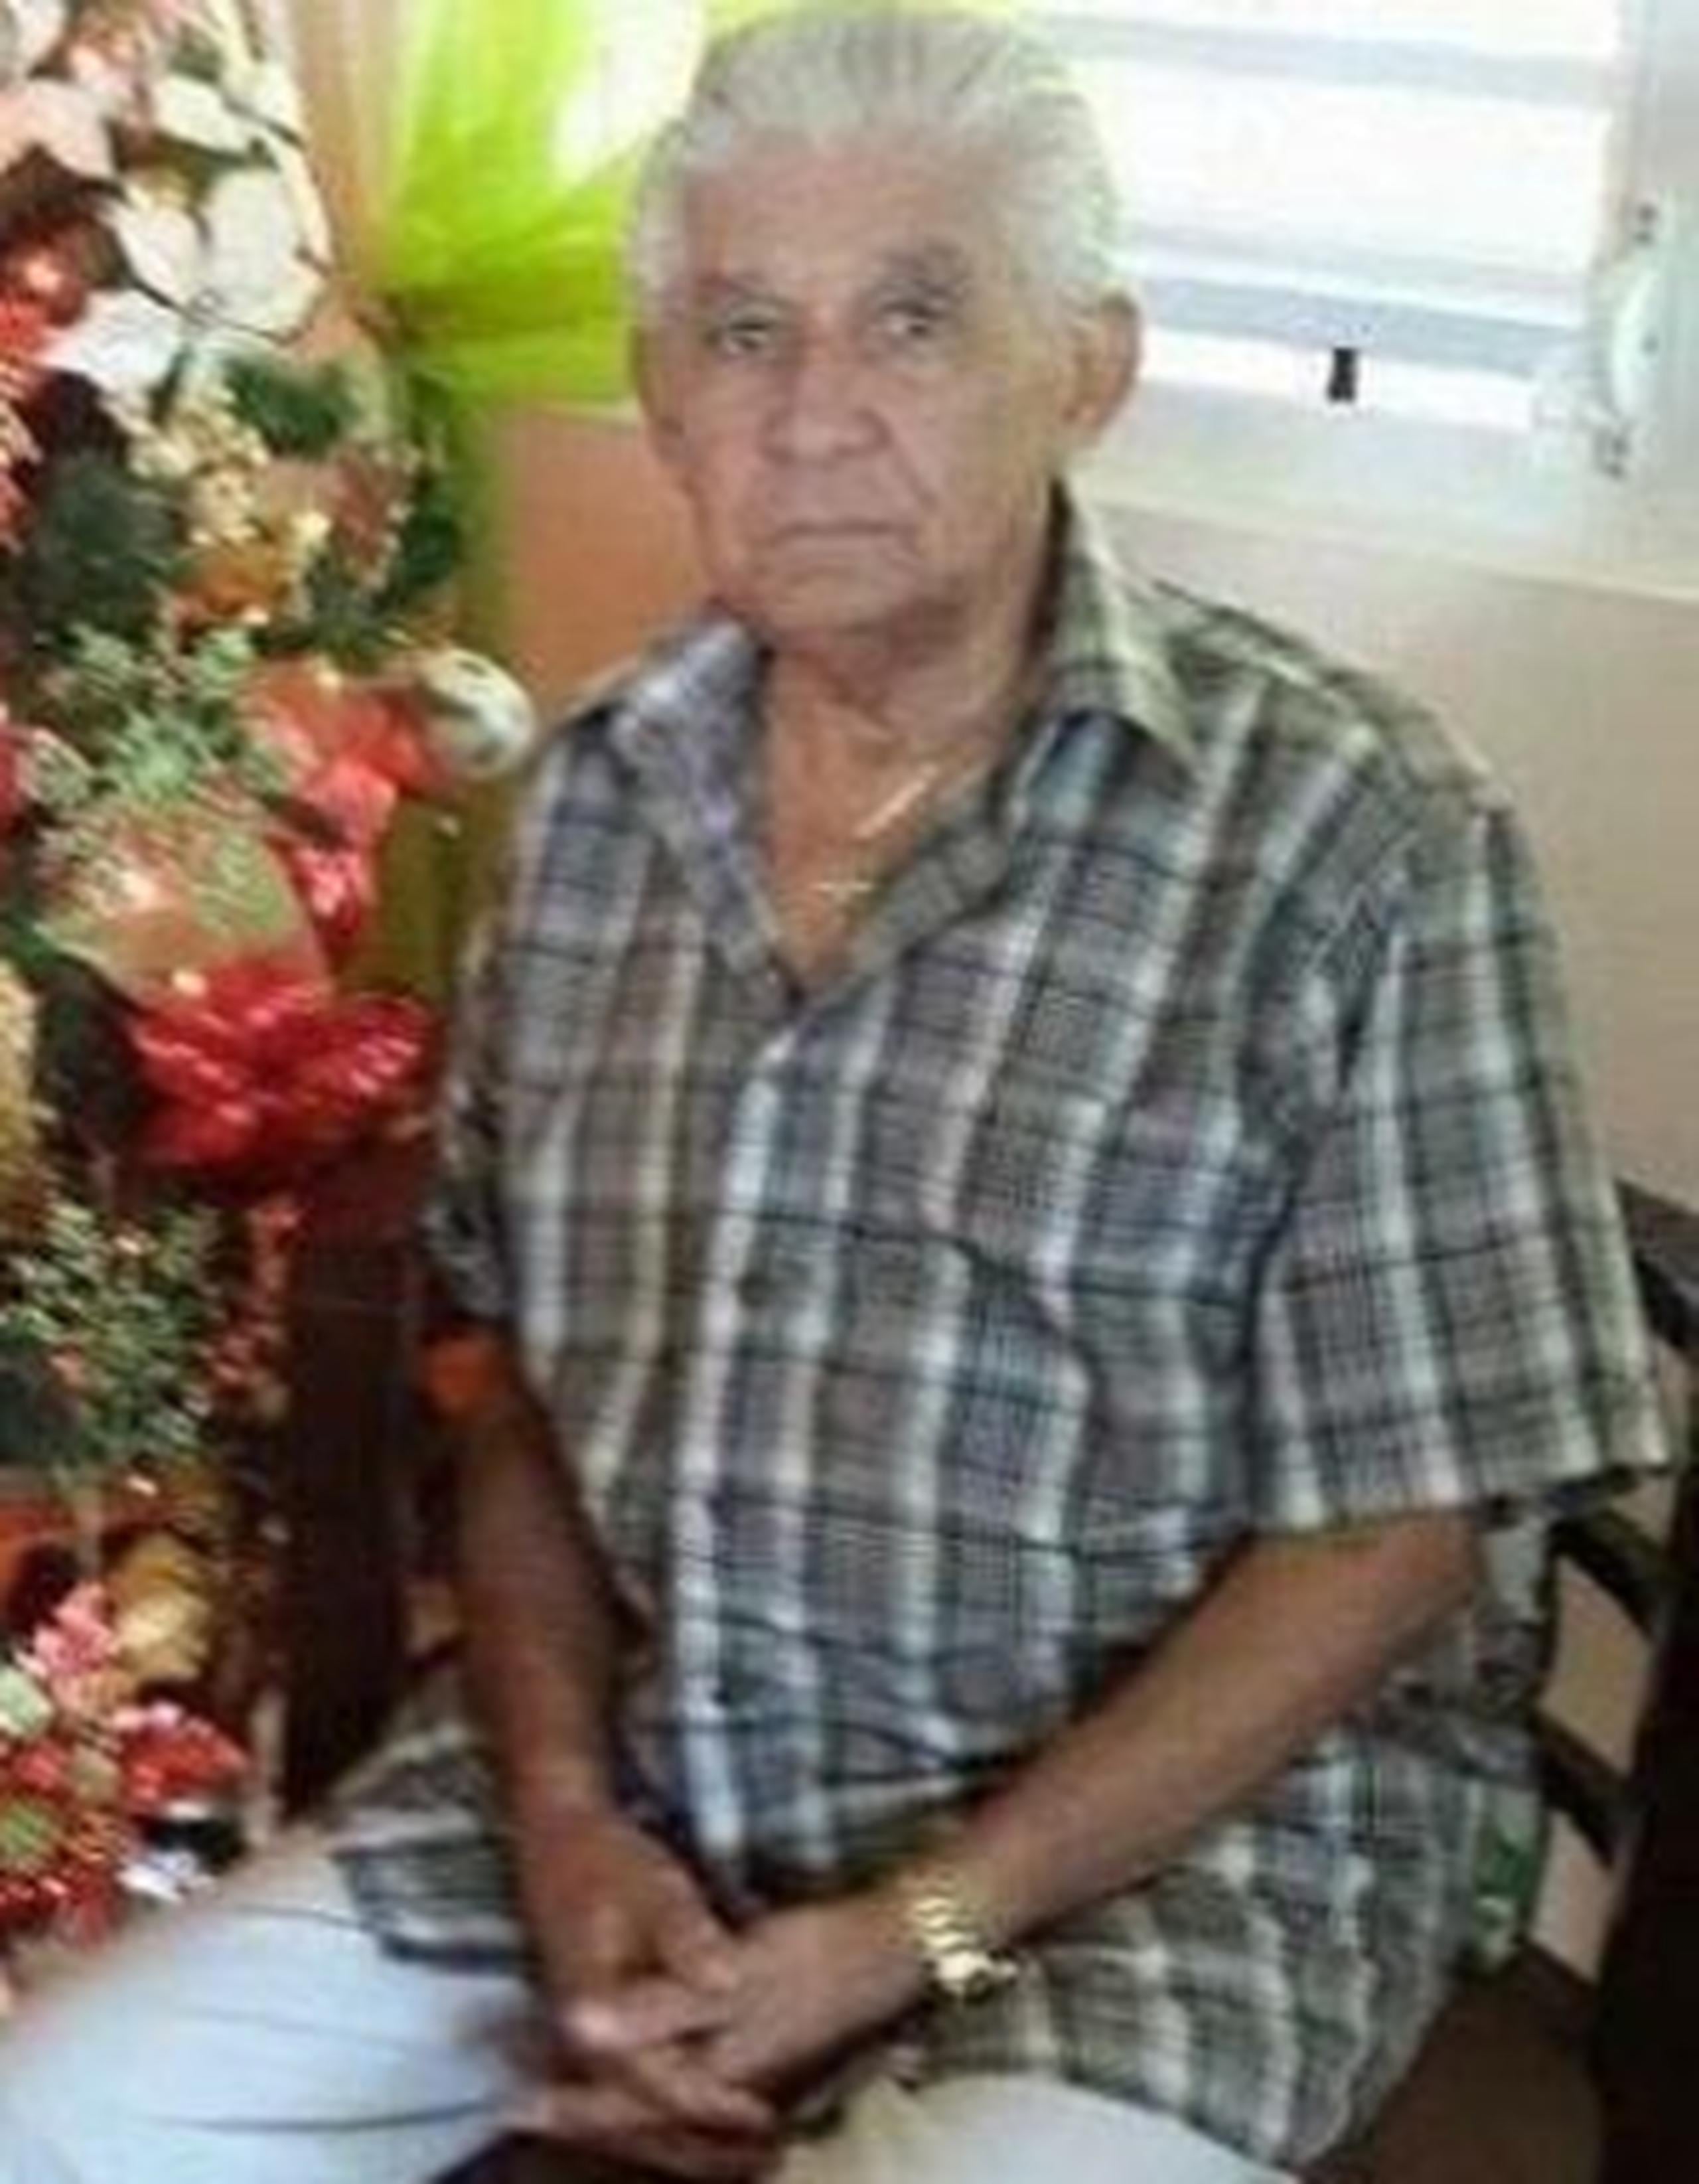 El cuerpo de don Rogelio Vega Crespo, de 81 años, fue encontrado en su casa amarrado, amordazado, vendado y con una herida en la cabeza. (Suministrada)